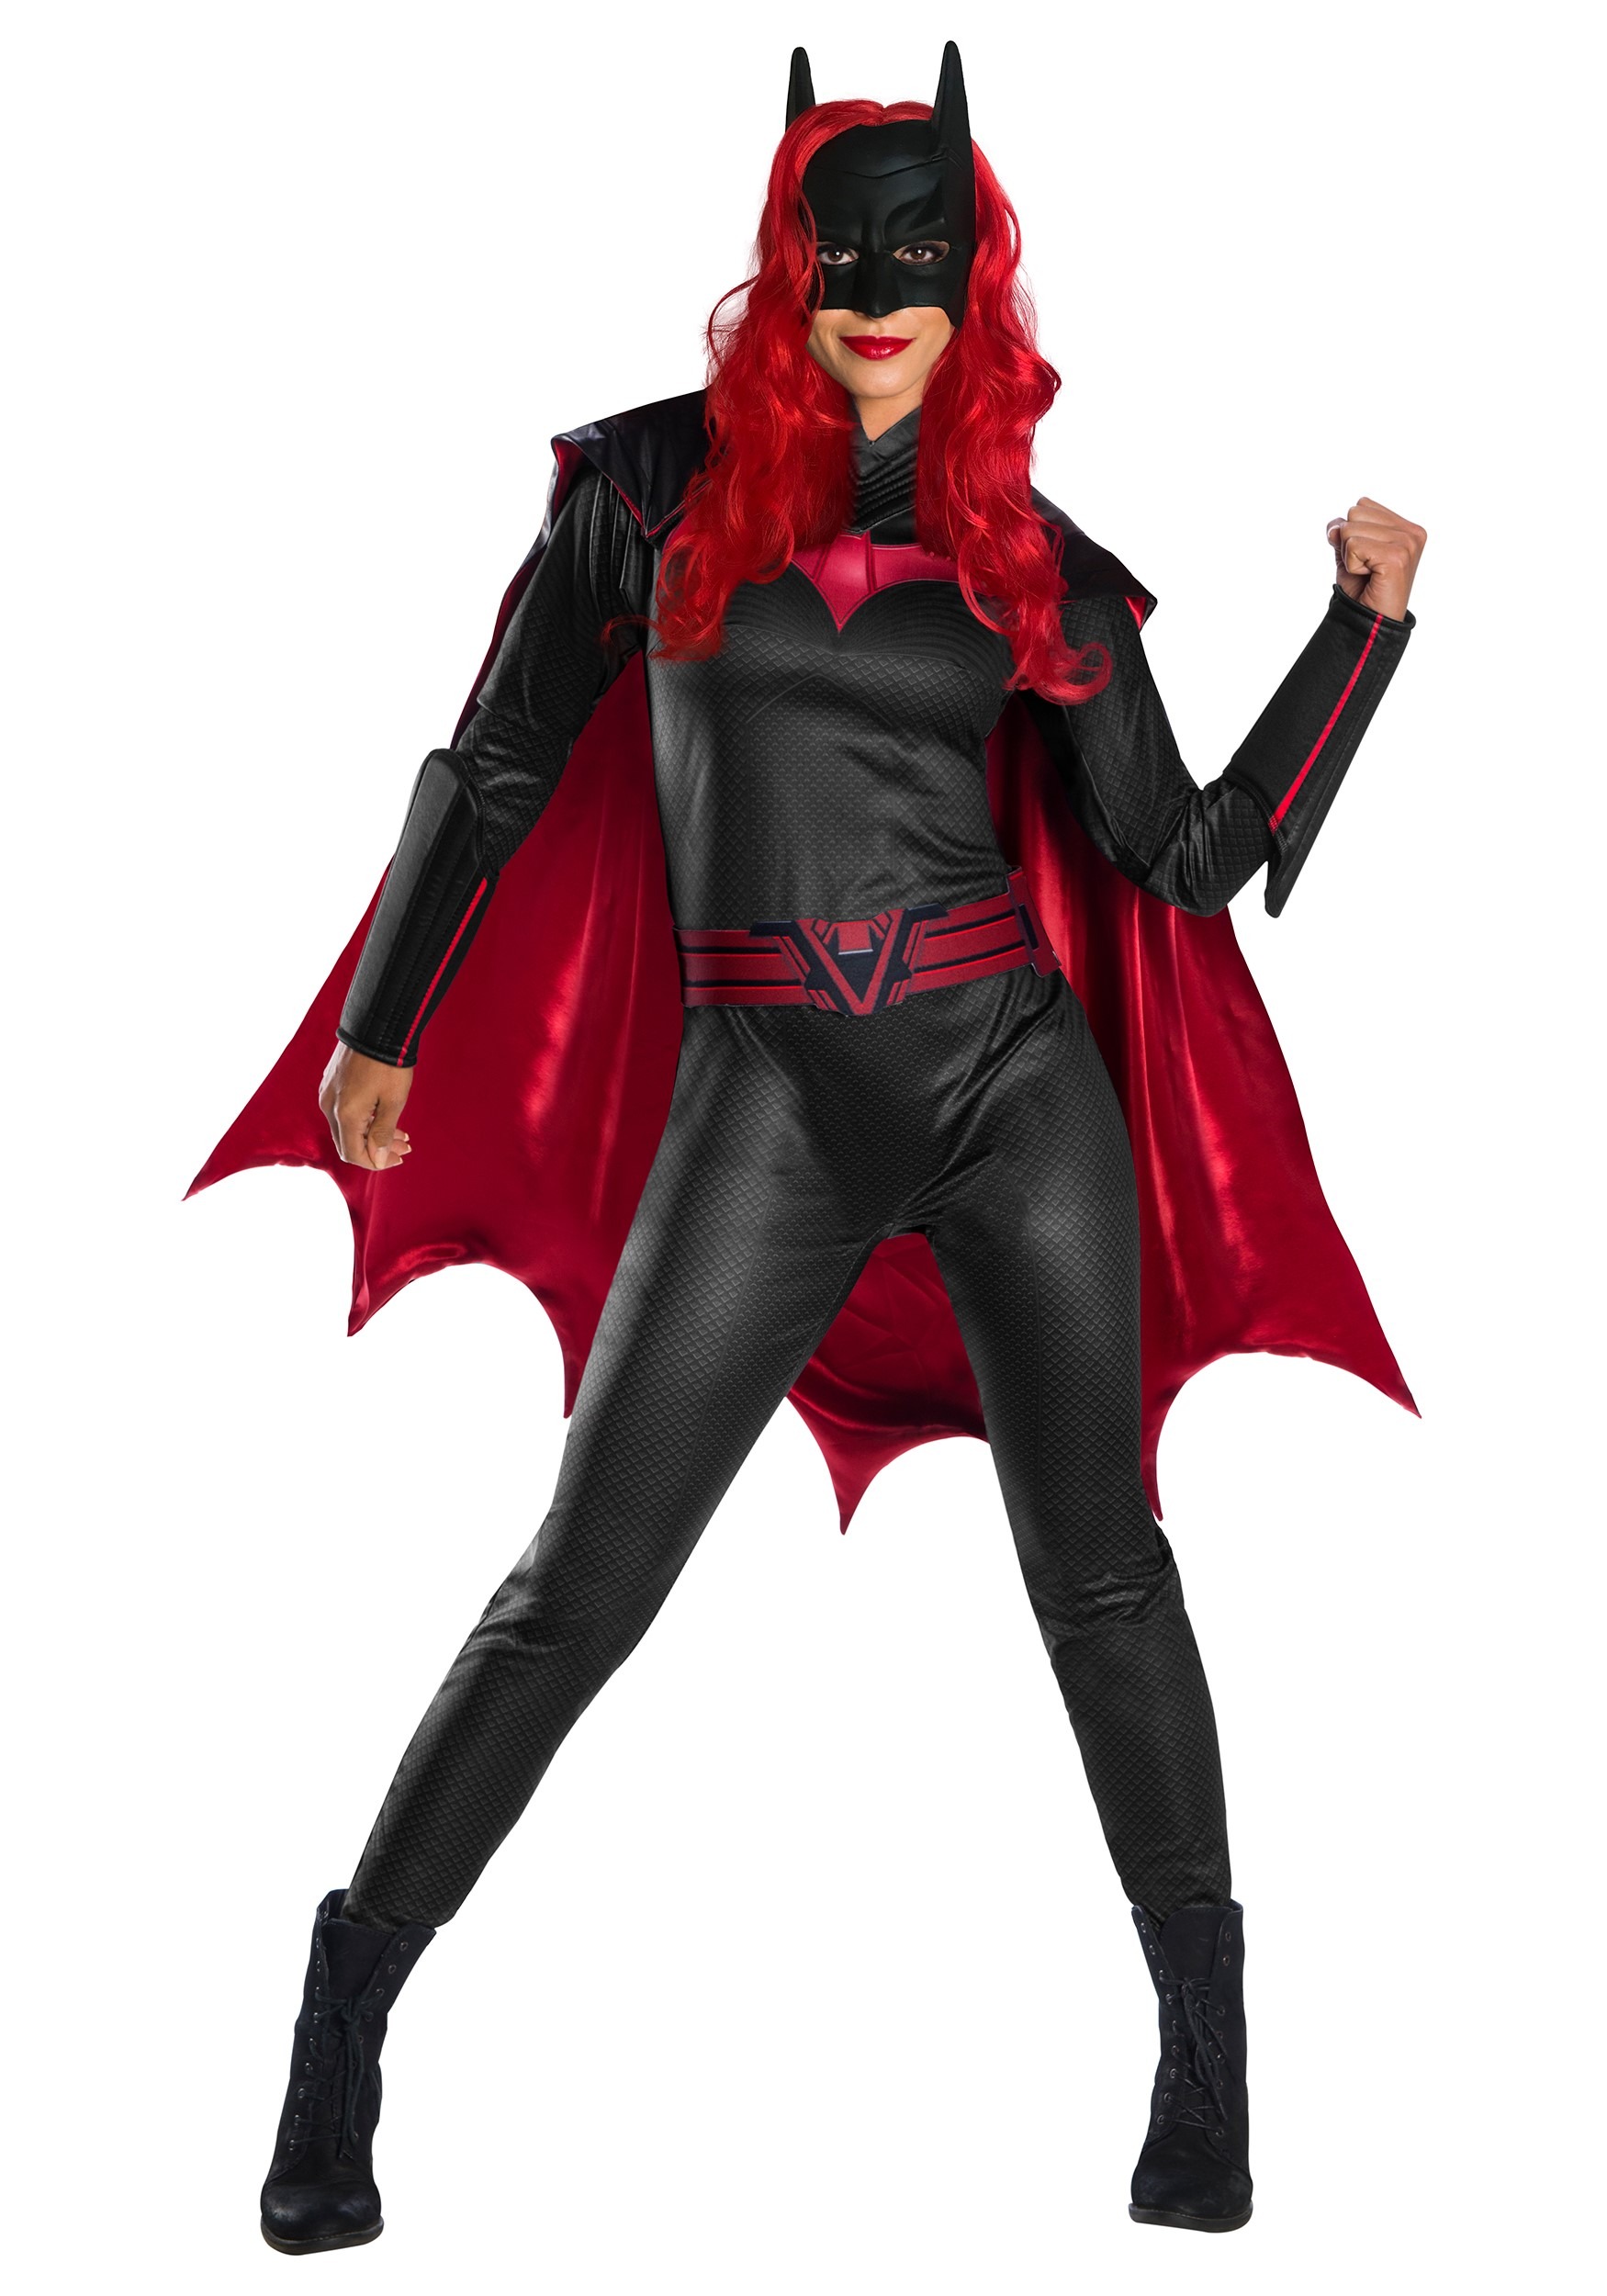 Image of Adult Batwoman Costume | Women's DC Comics Costumes ID RU701859-ST